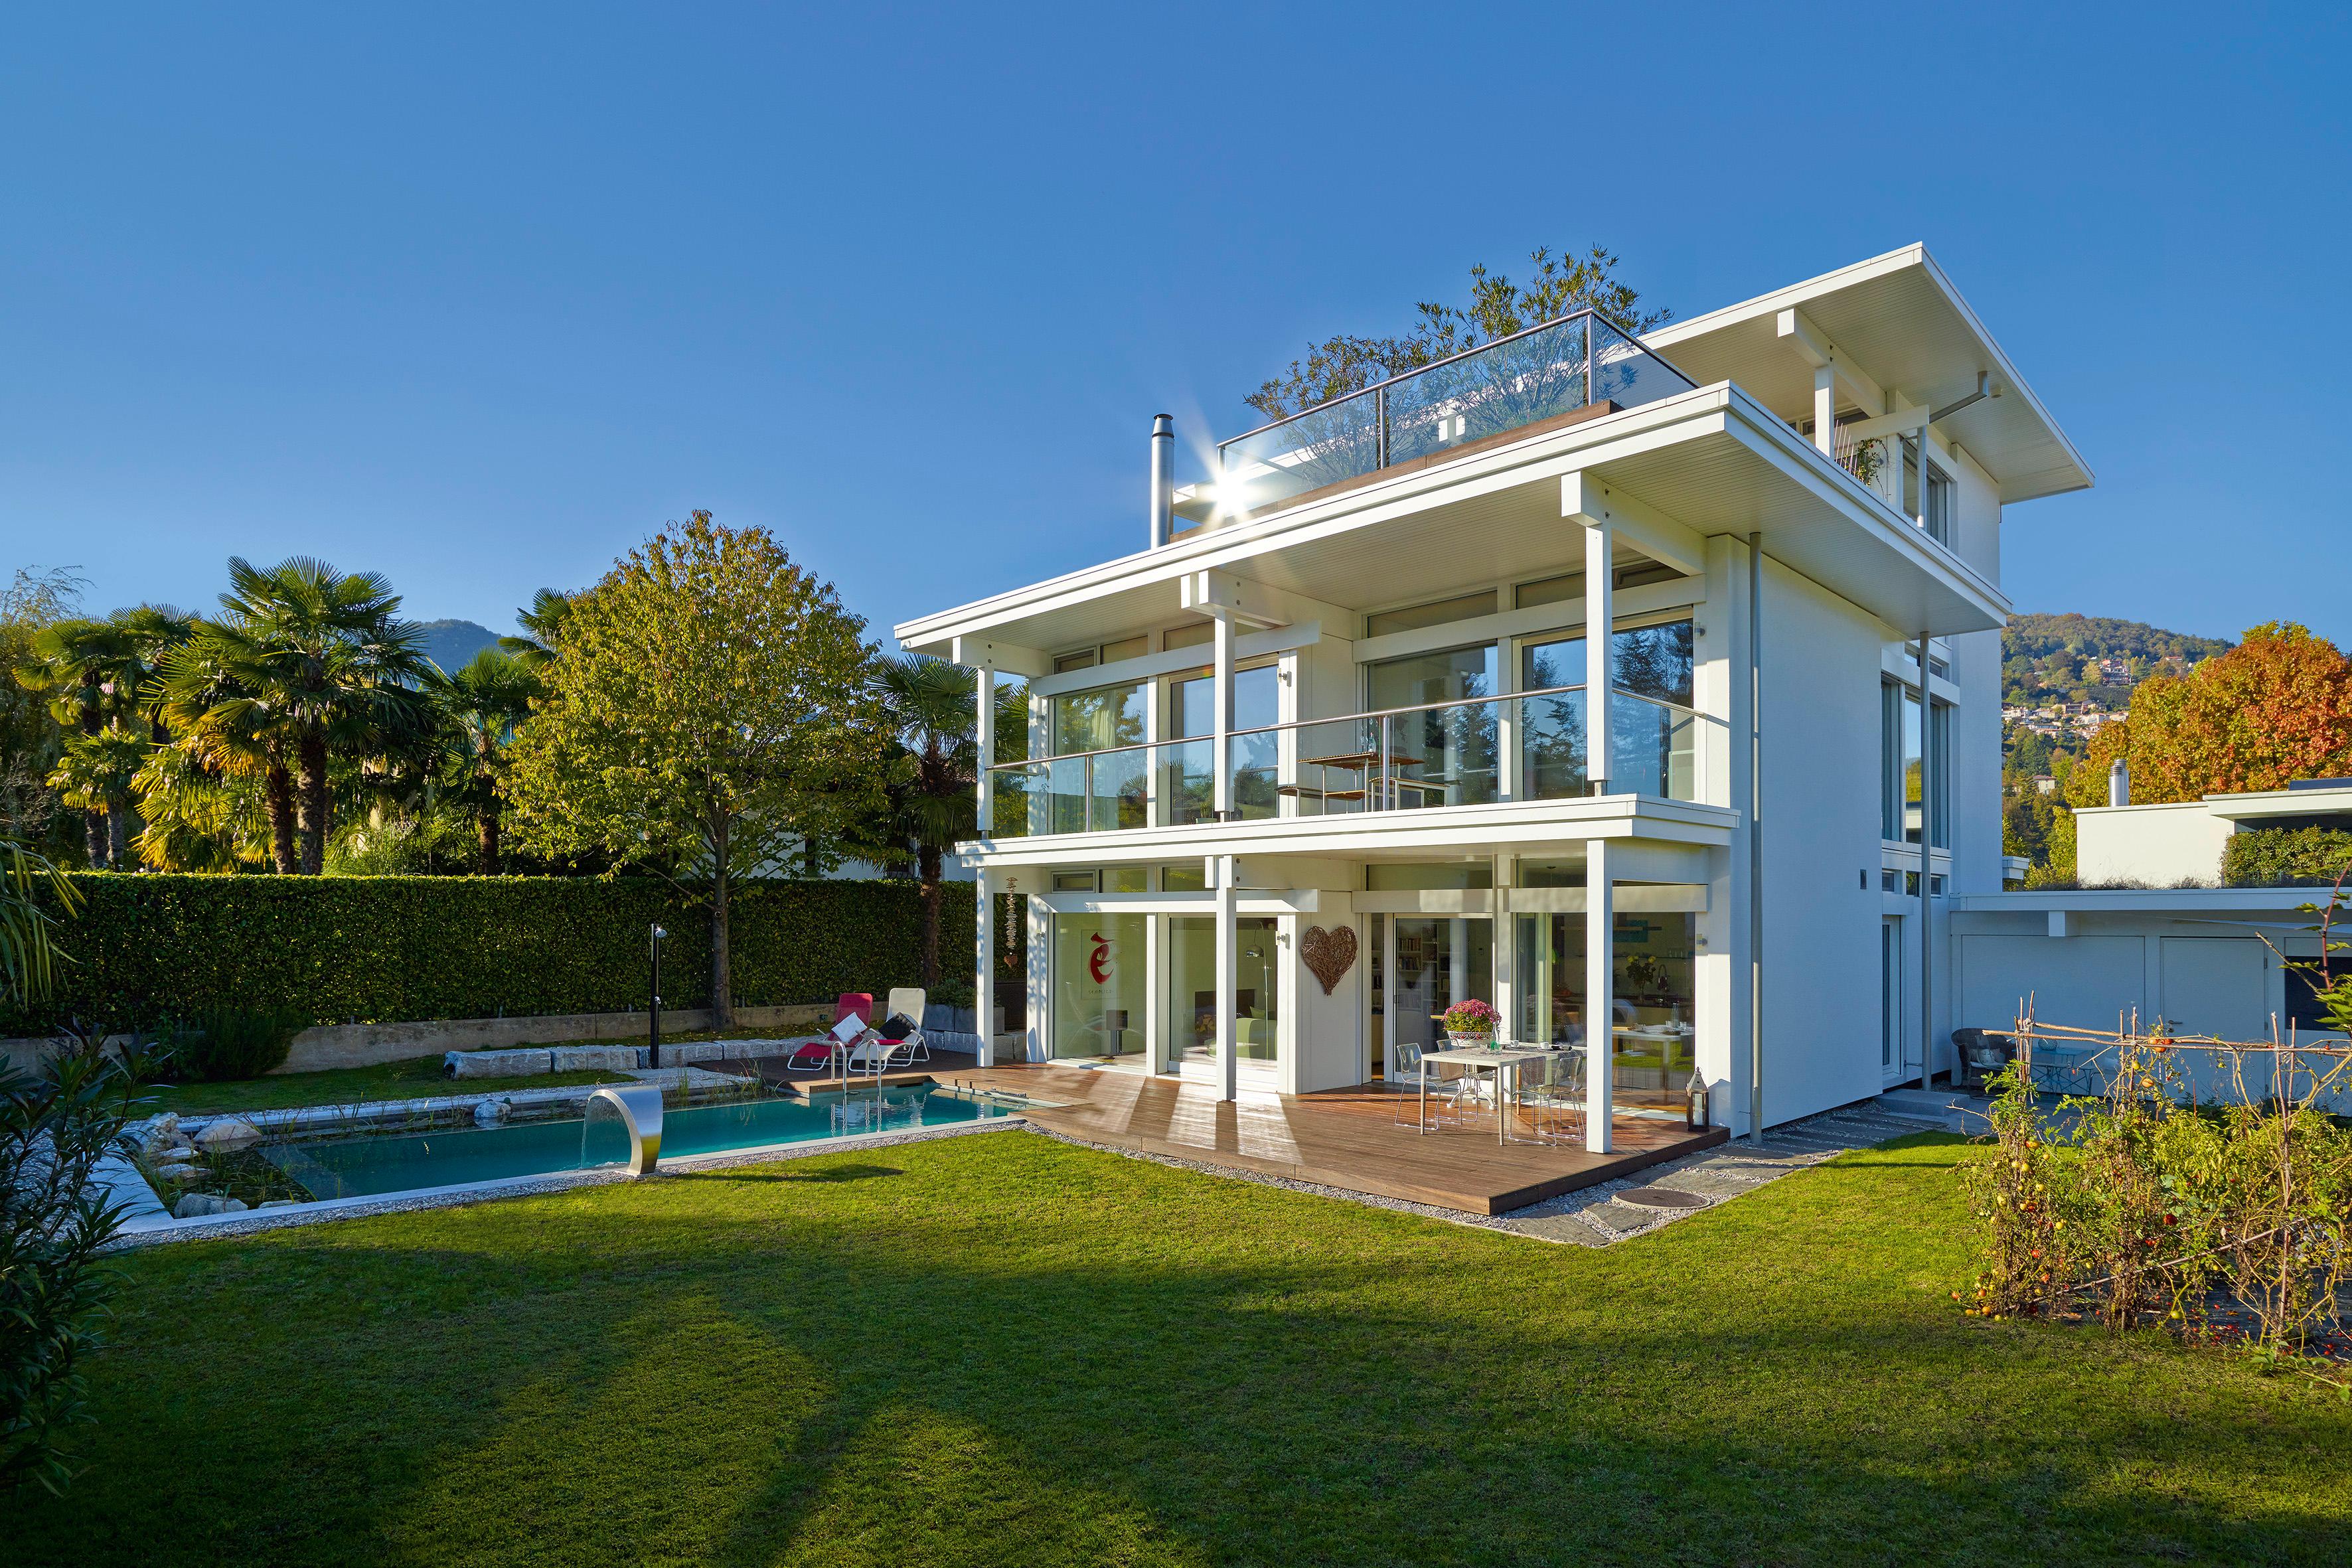 HUF Haus von Außen #pool #terrasse #hausfassade ©HUF HAUS